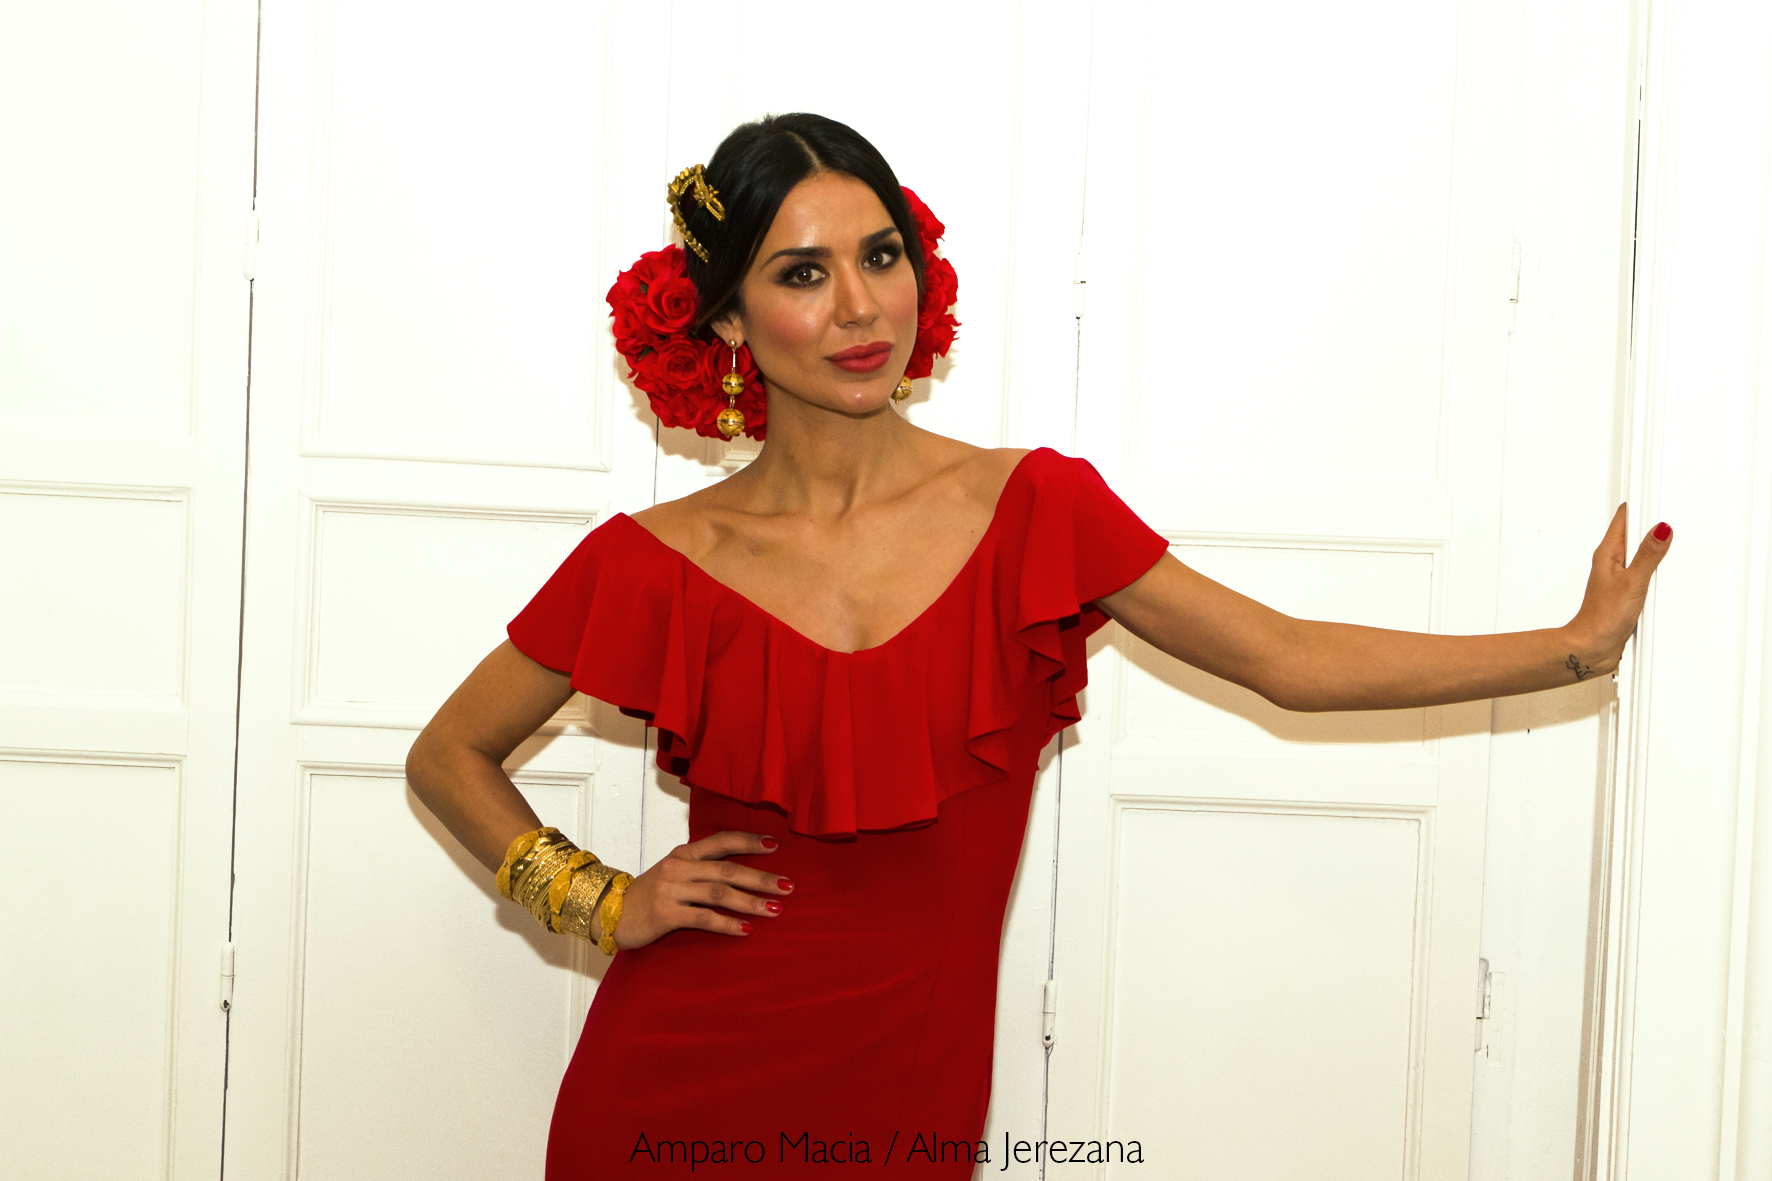 Amparo Macia: el sello jerezano de la moda flamenca